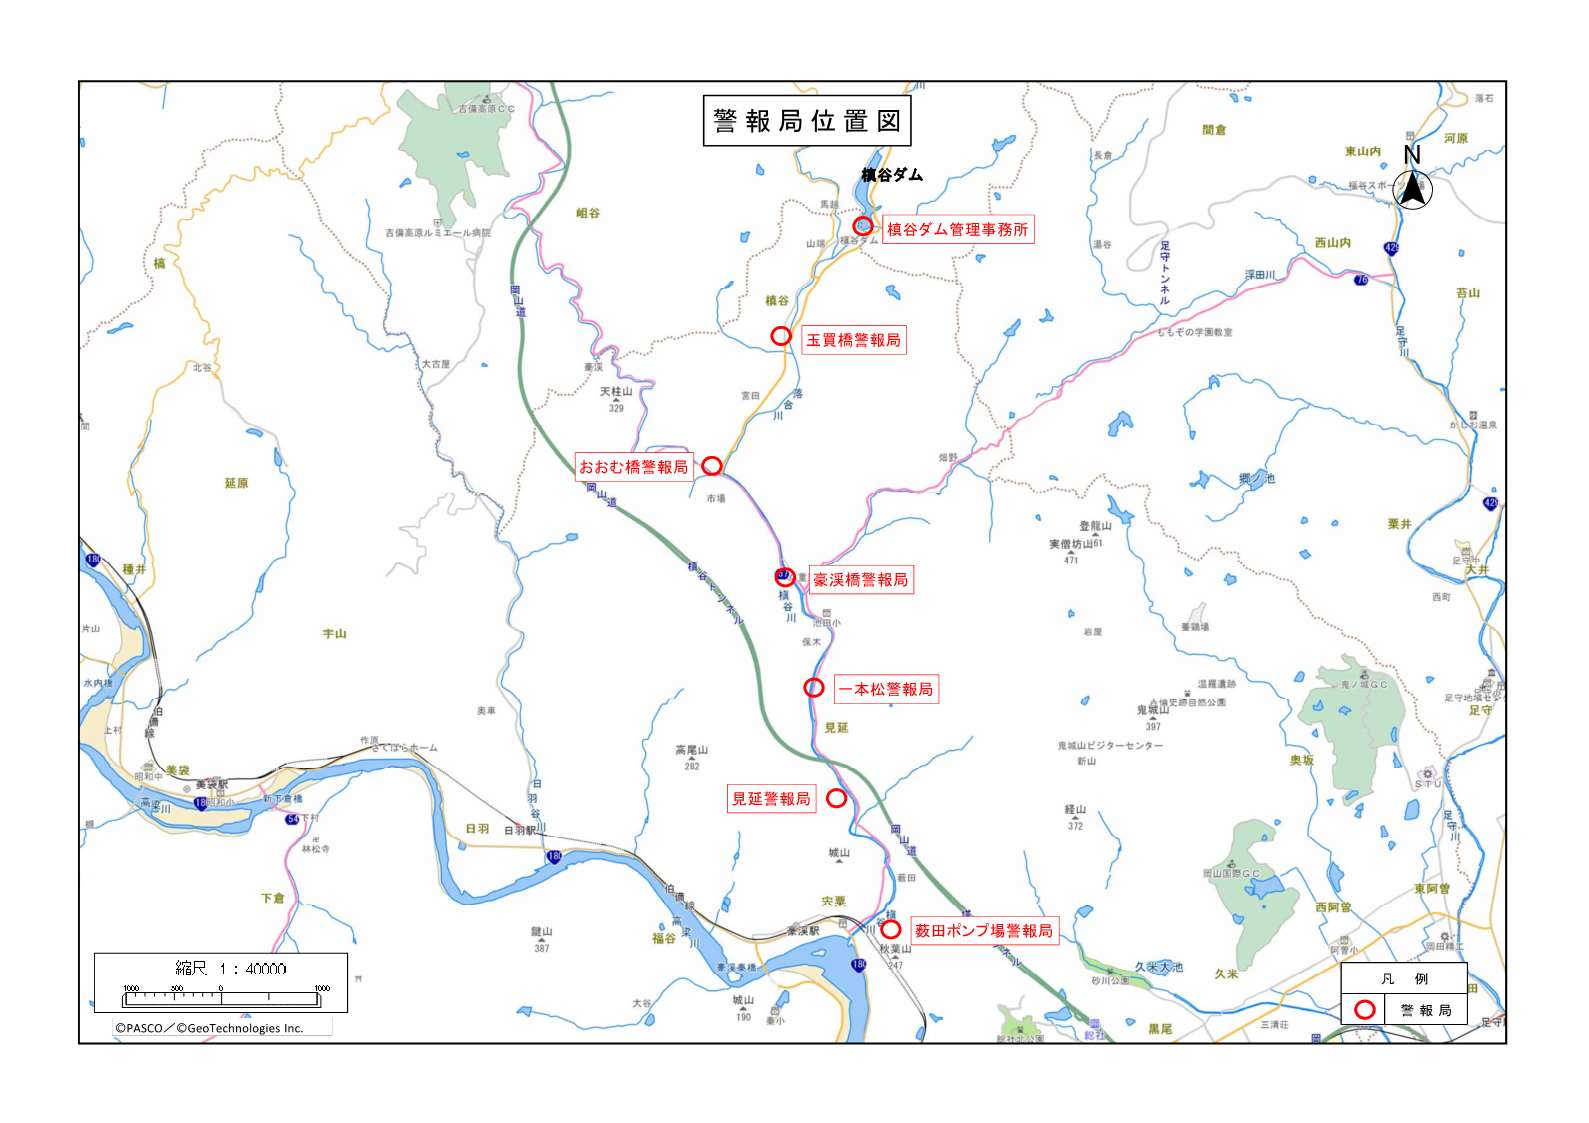 槙谷ダムの場所と警報局の設置位置（7箇所）を記した地図です。